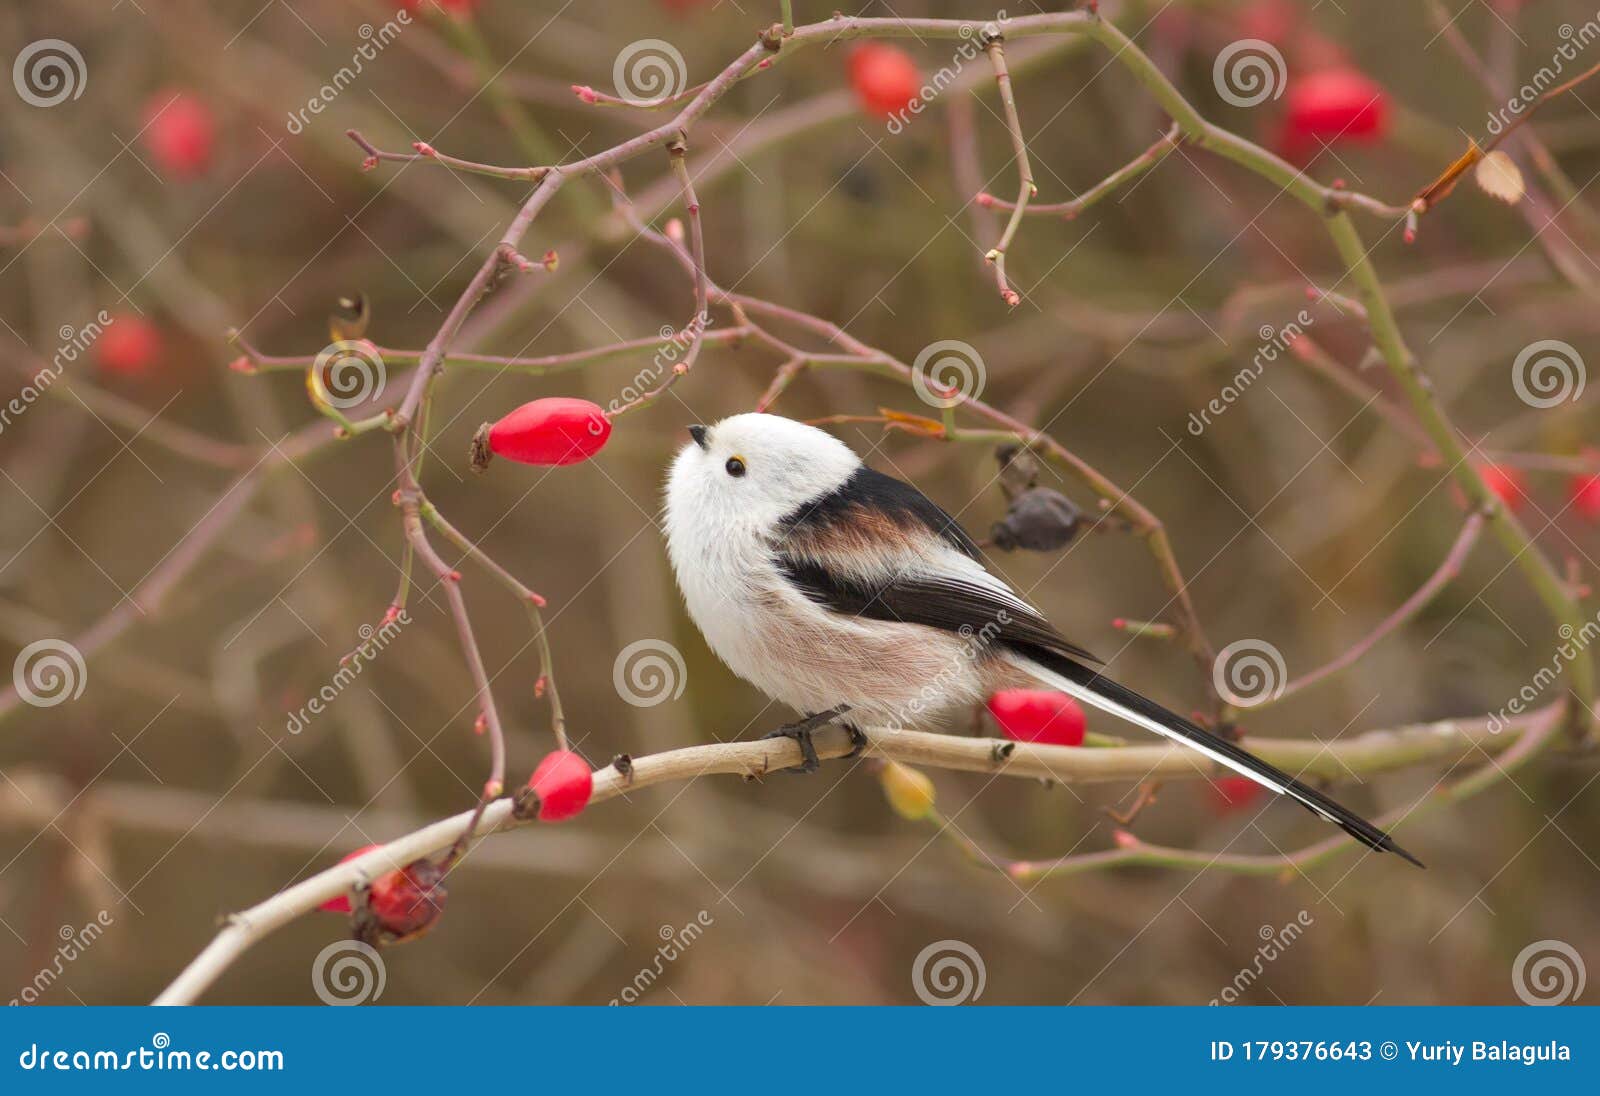 Mésange à queue longue aegithalos caudatus portrait d'automne. l'oiseau est assis sur une branche